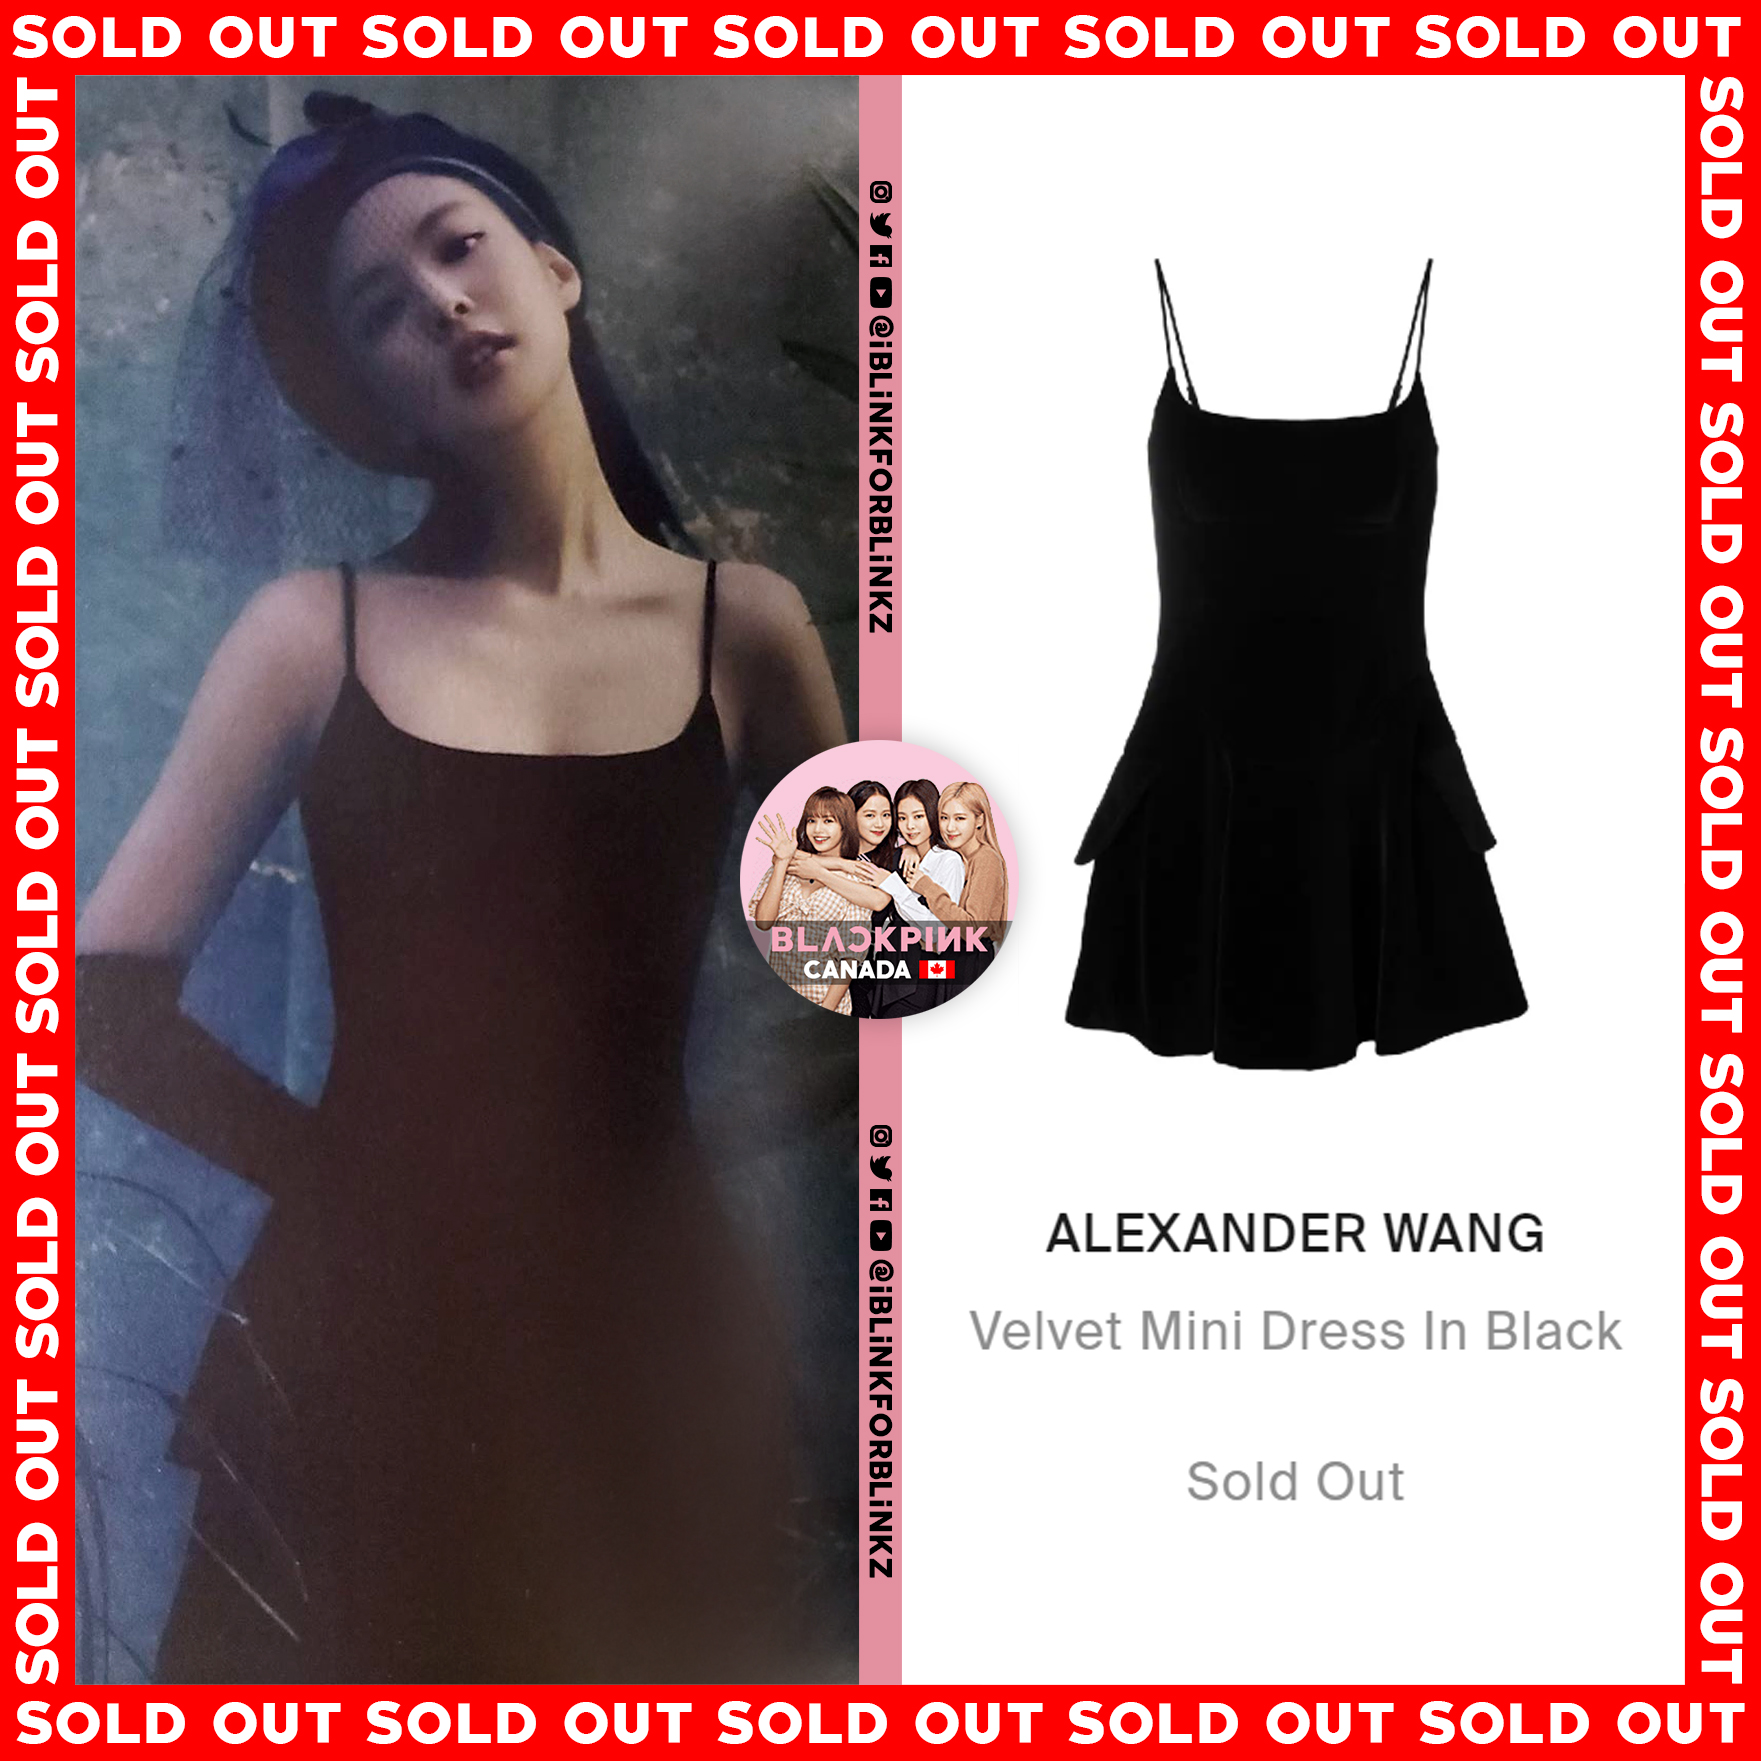 alexander wang velvet mini dress